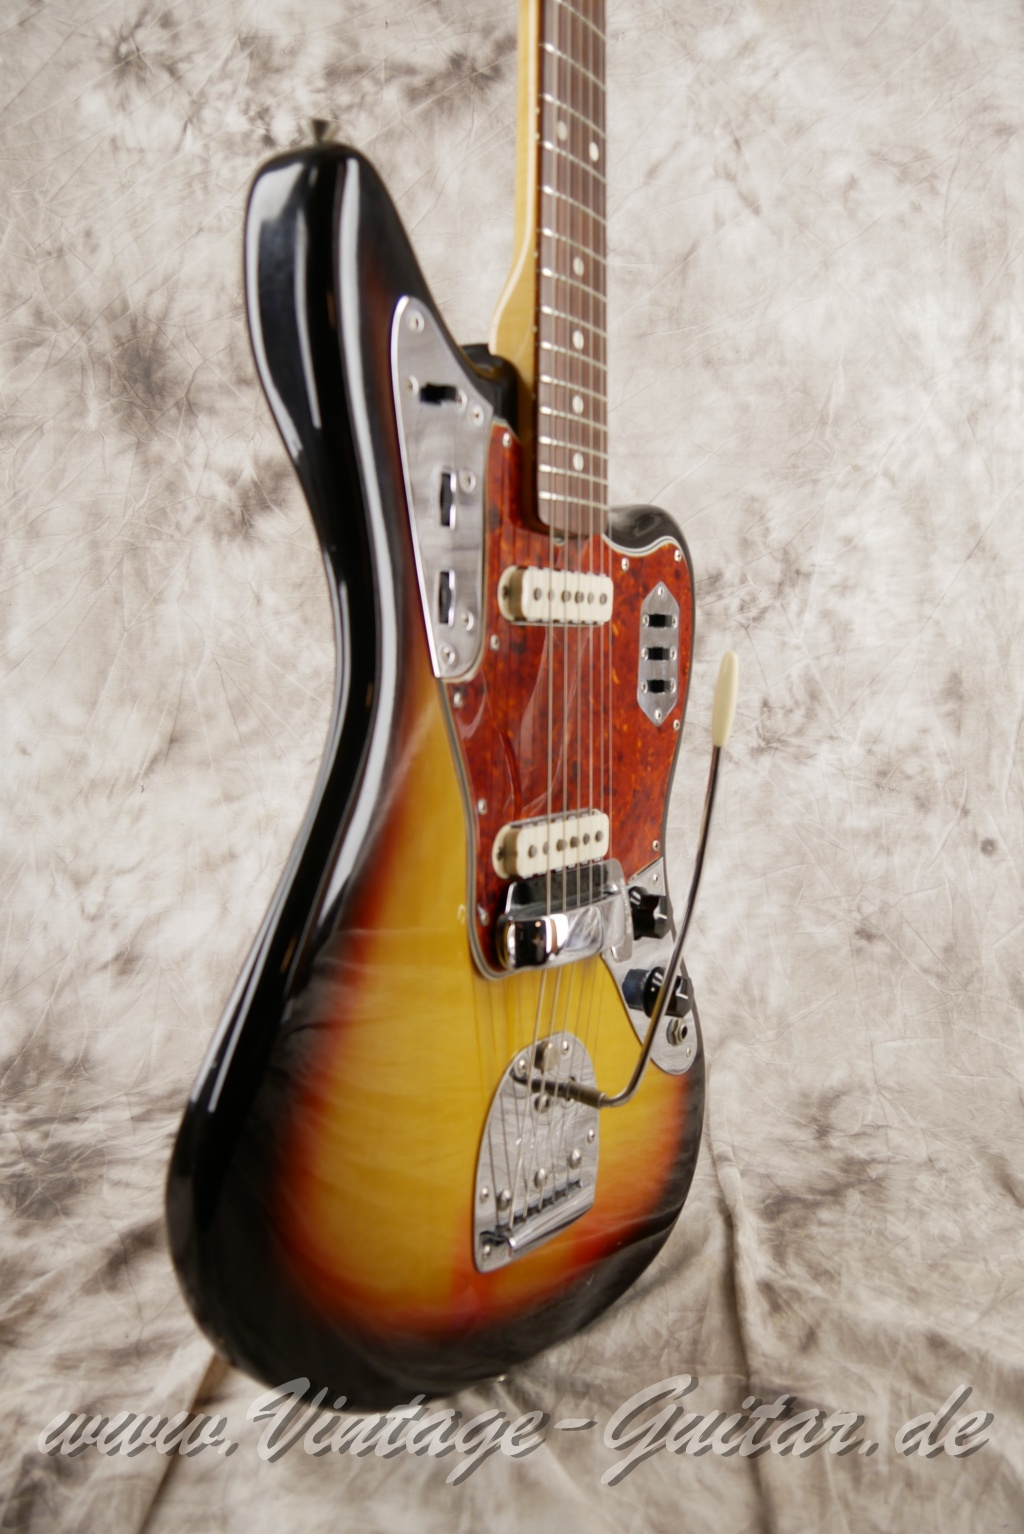 Fender_Jaguar_sunburst_1965_brown_case-009.JPG